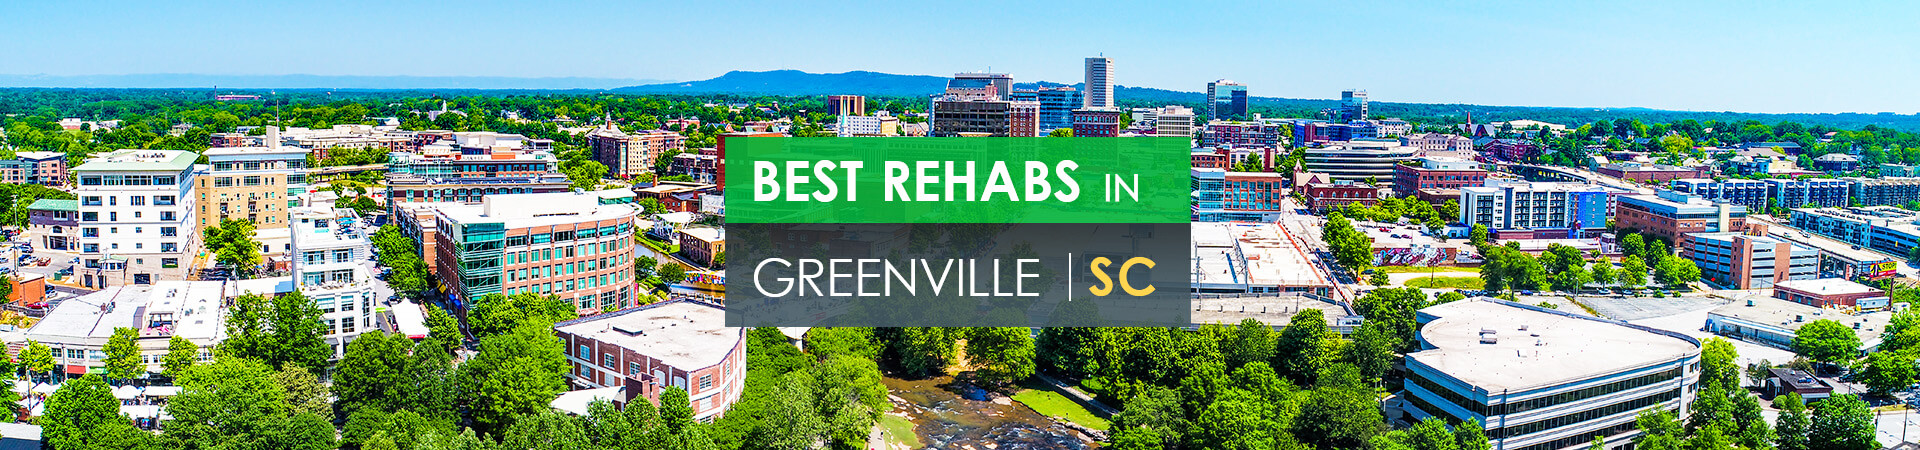 Best rehabs in Greenville, SC